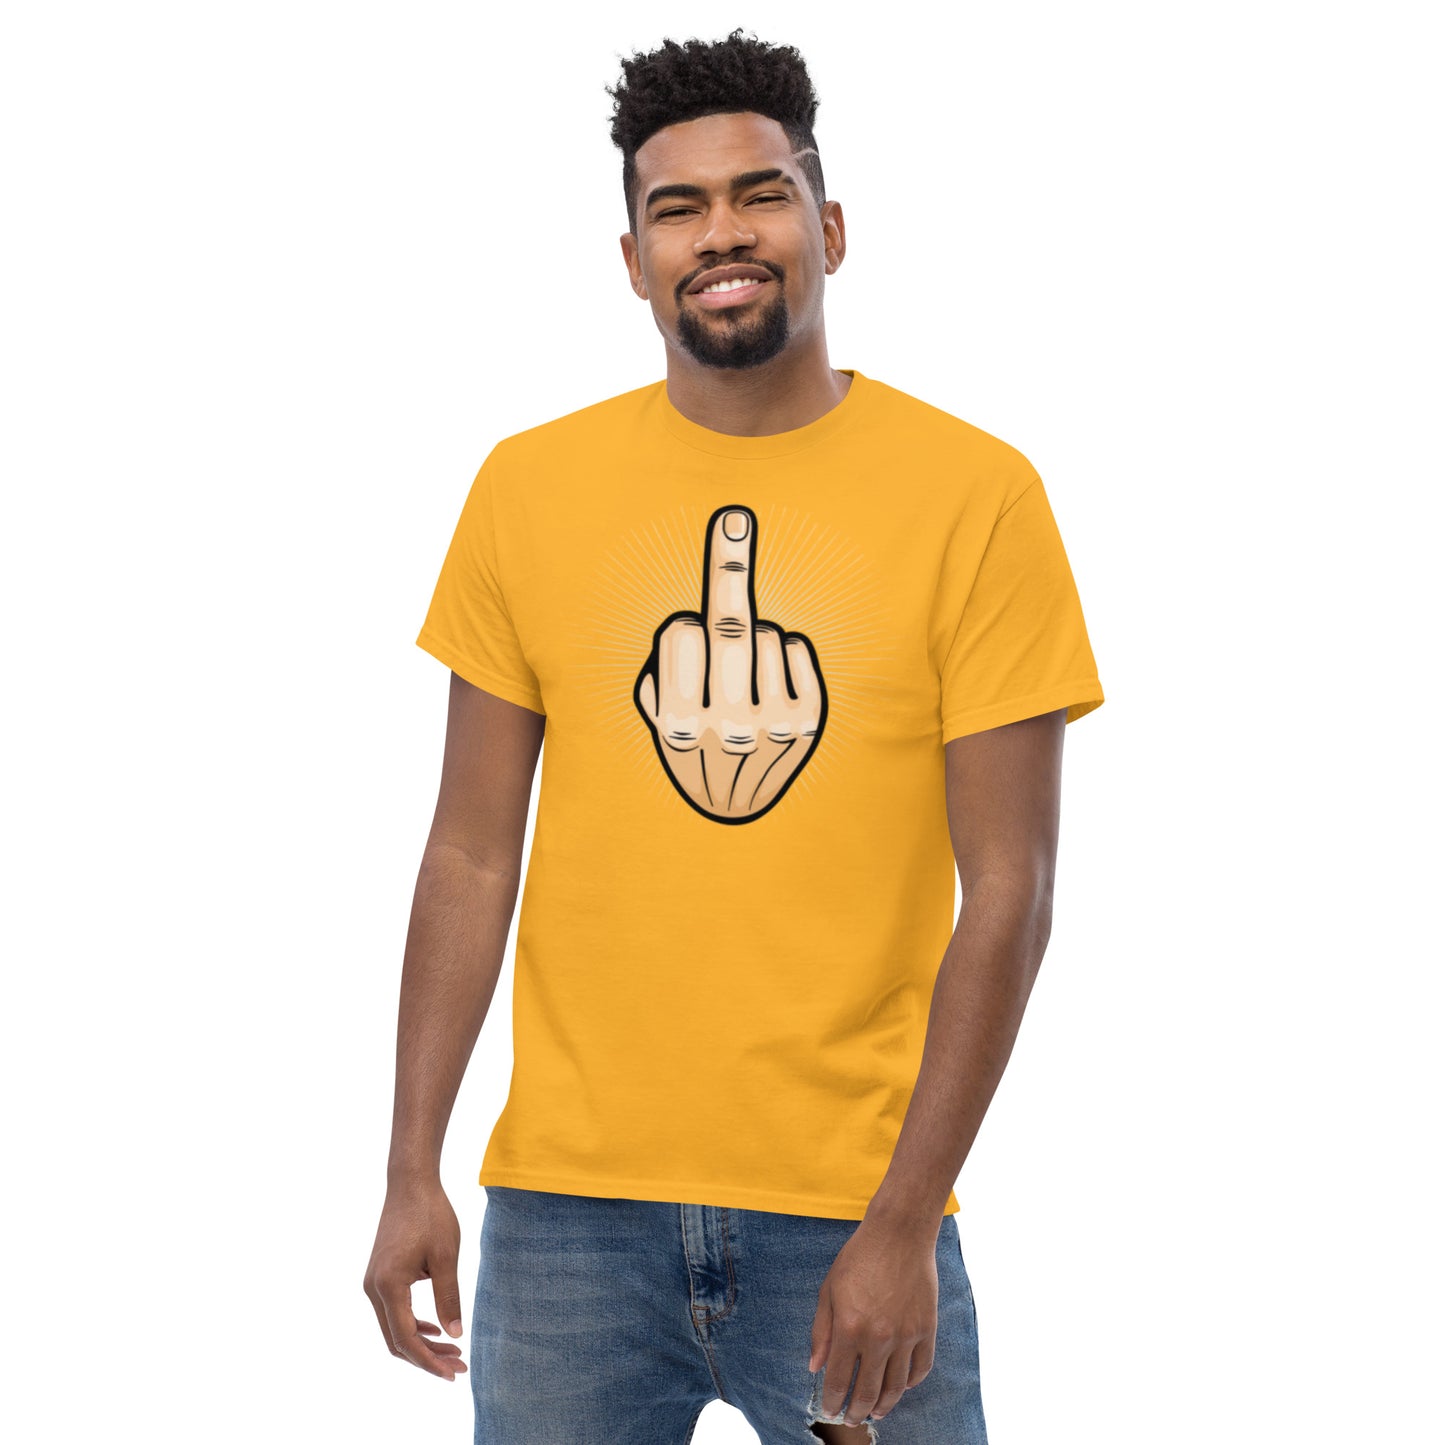 "Keskisormi" miesten t-paita